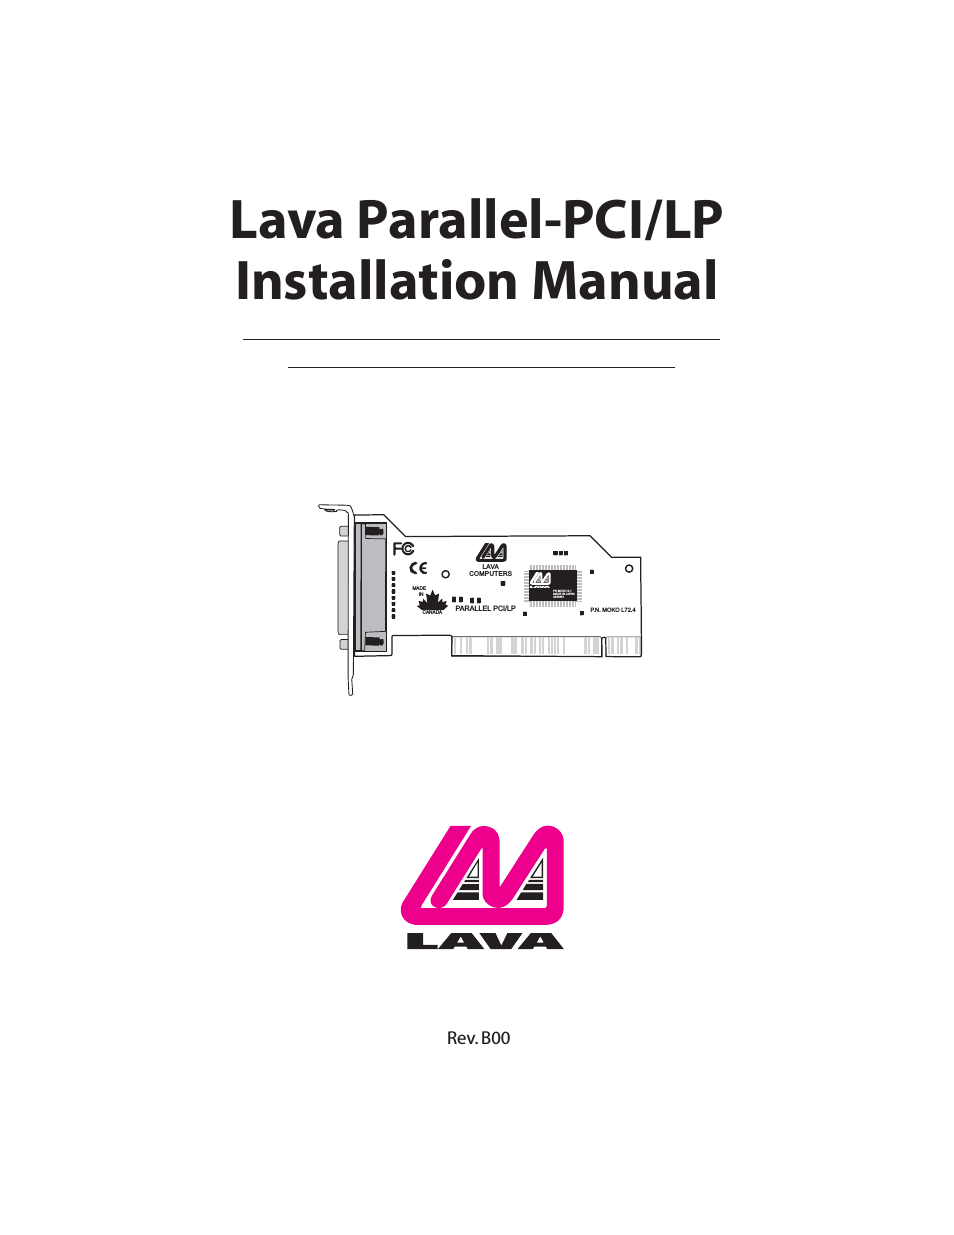 Parallel-PCI/LP Card